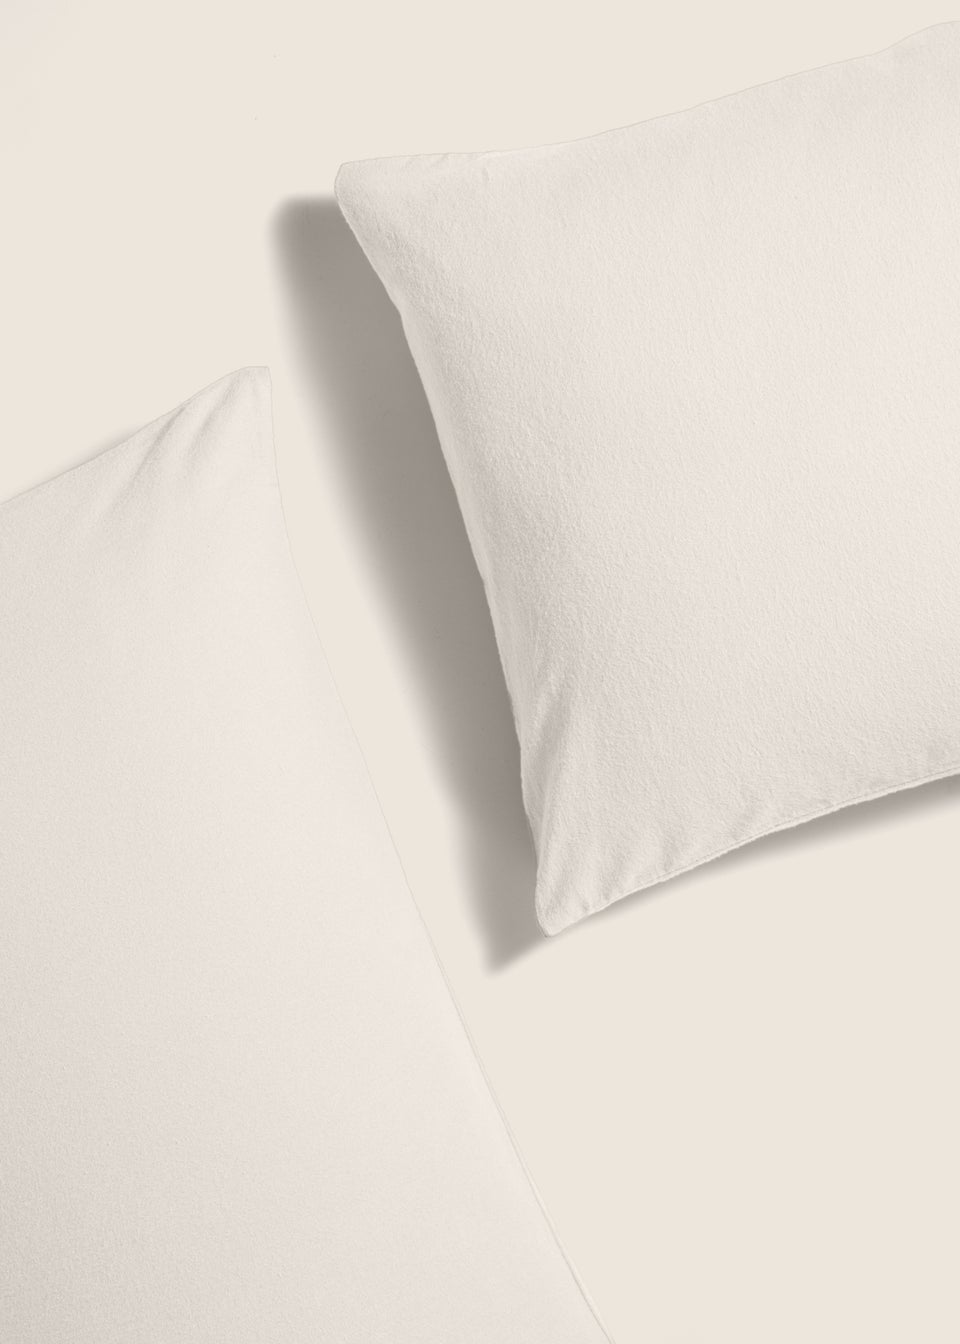 100% Cotton White Pillowcase